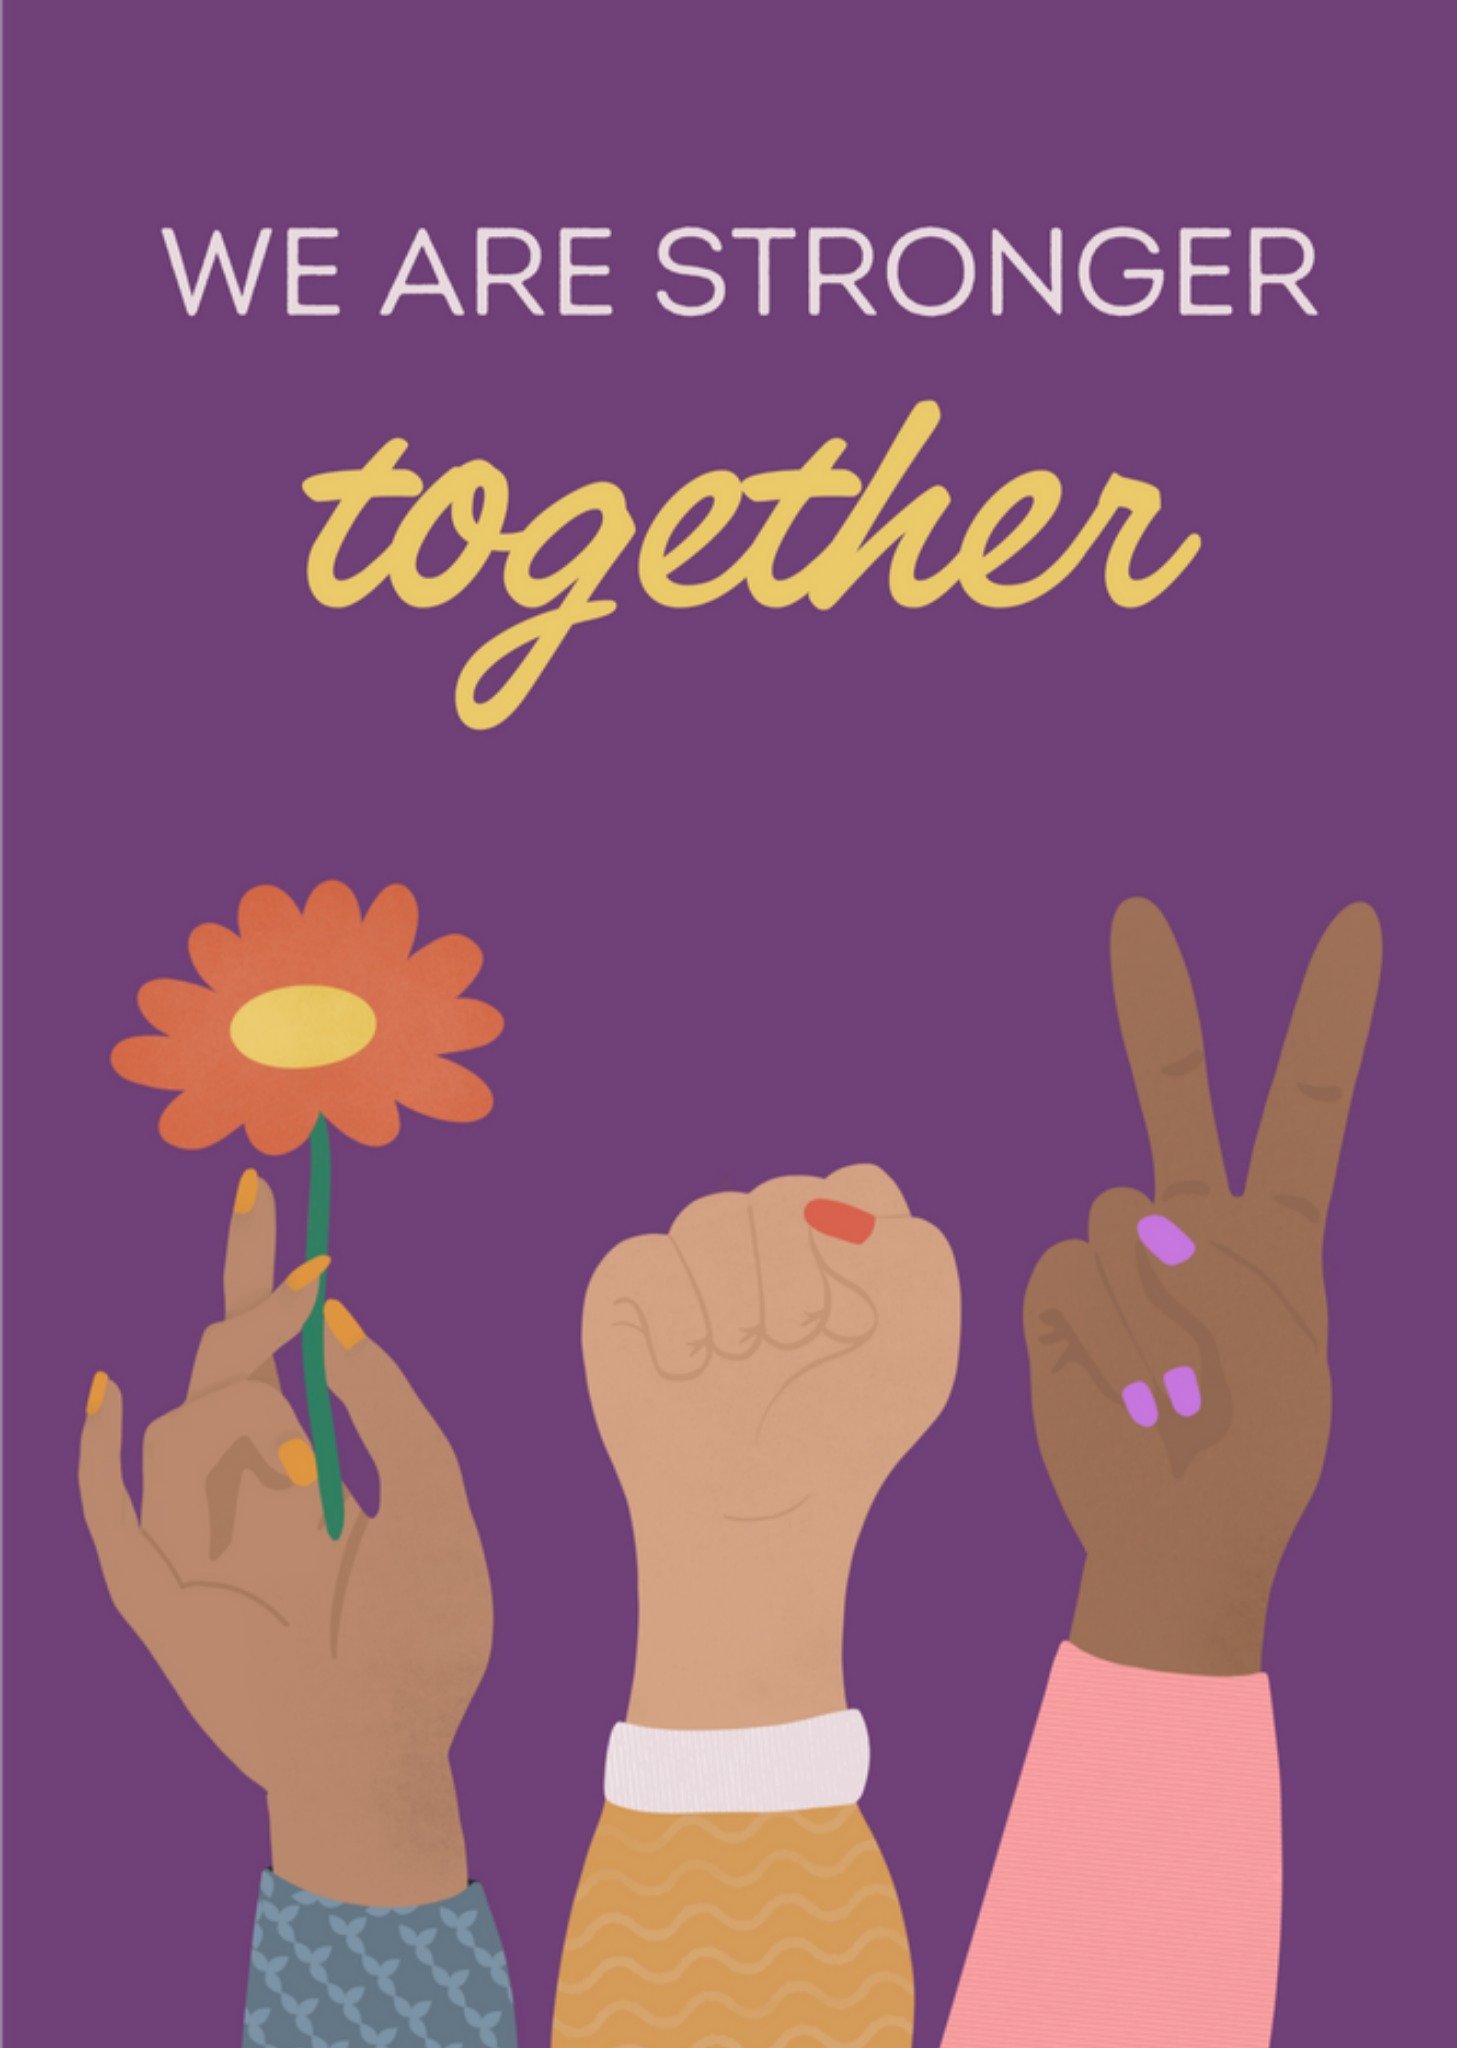 Internationale Vrouwendag - Stronger Together